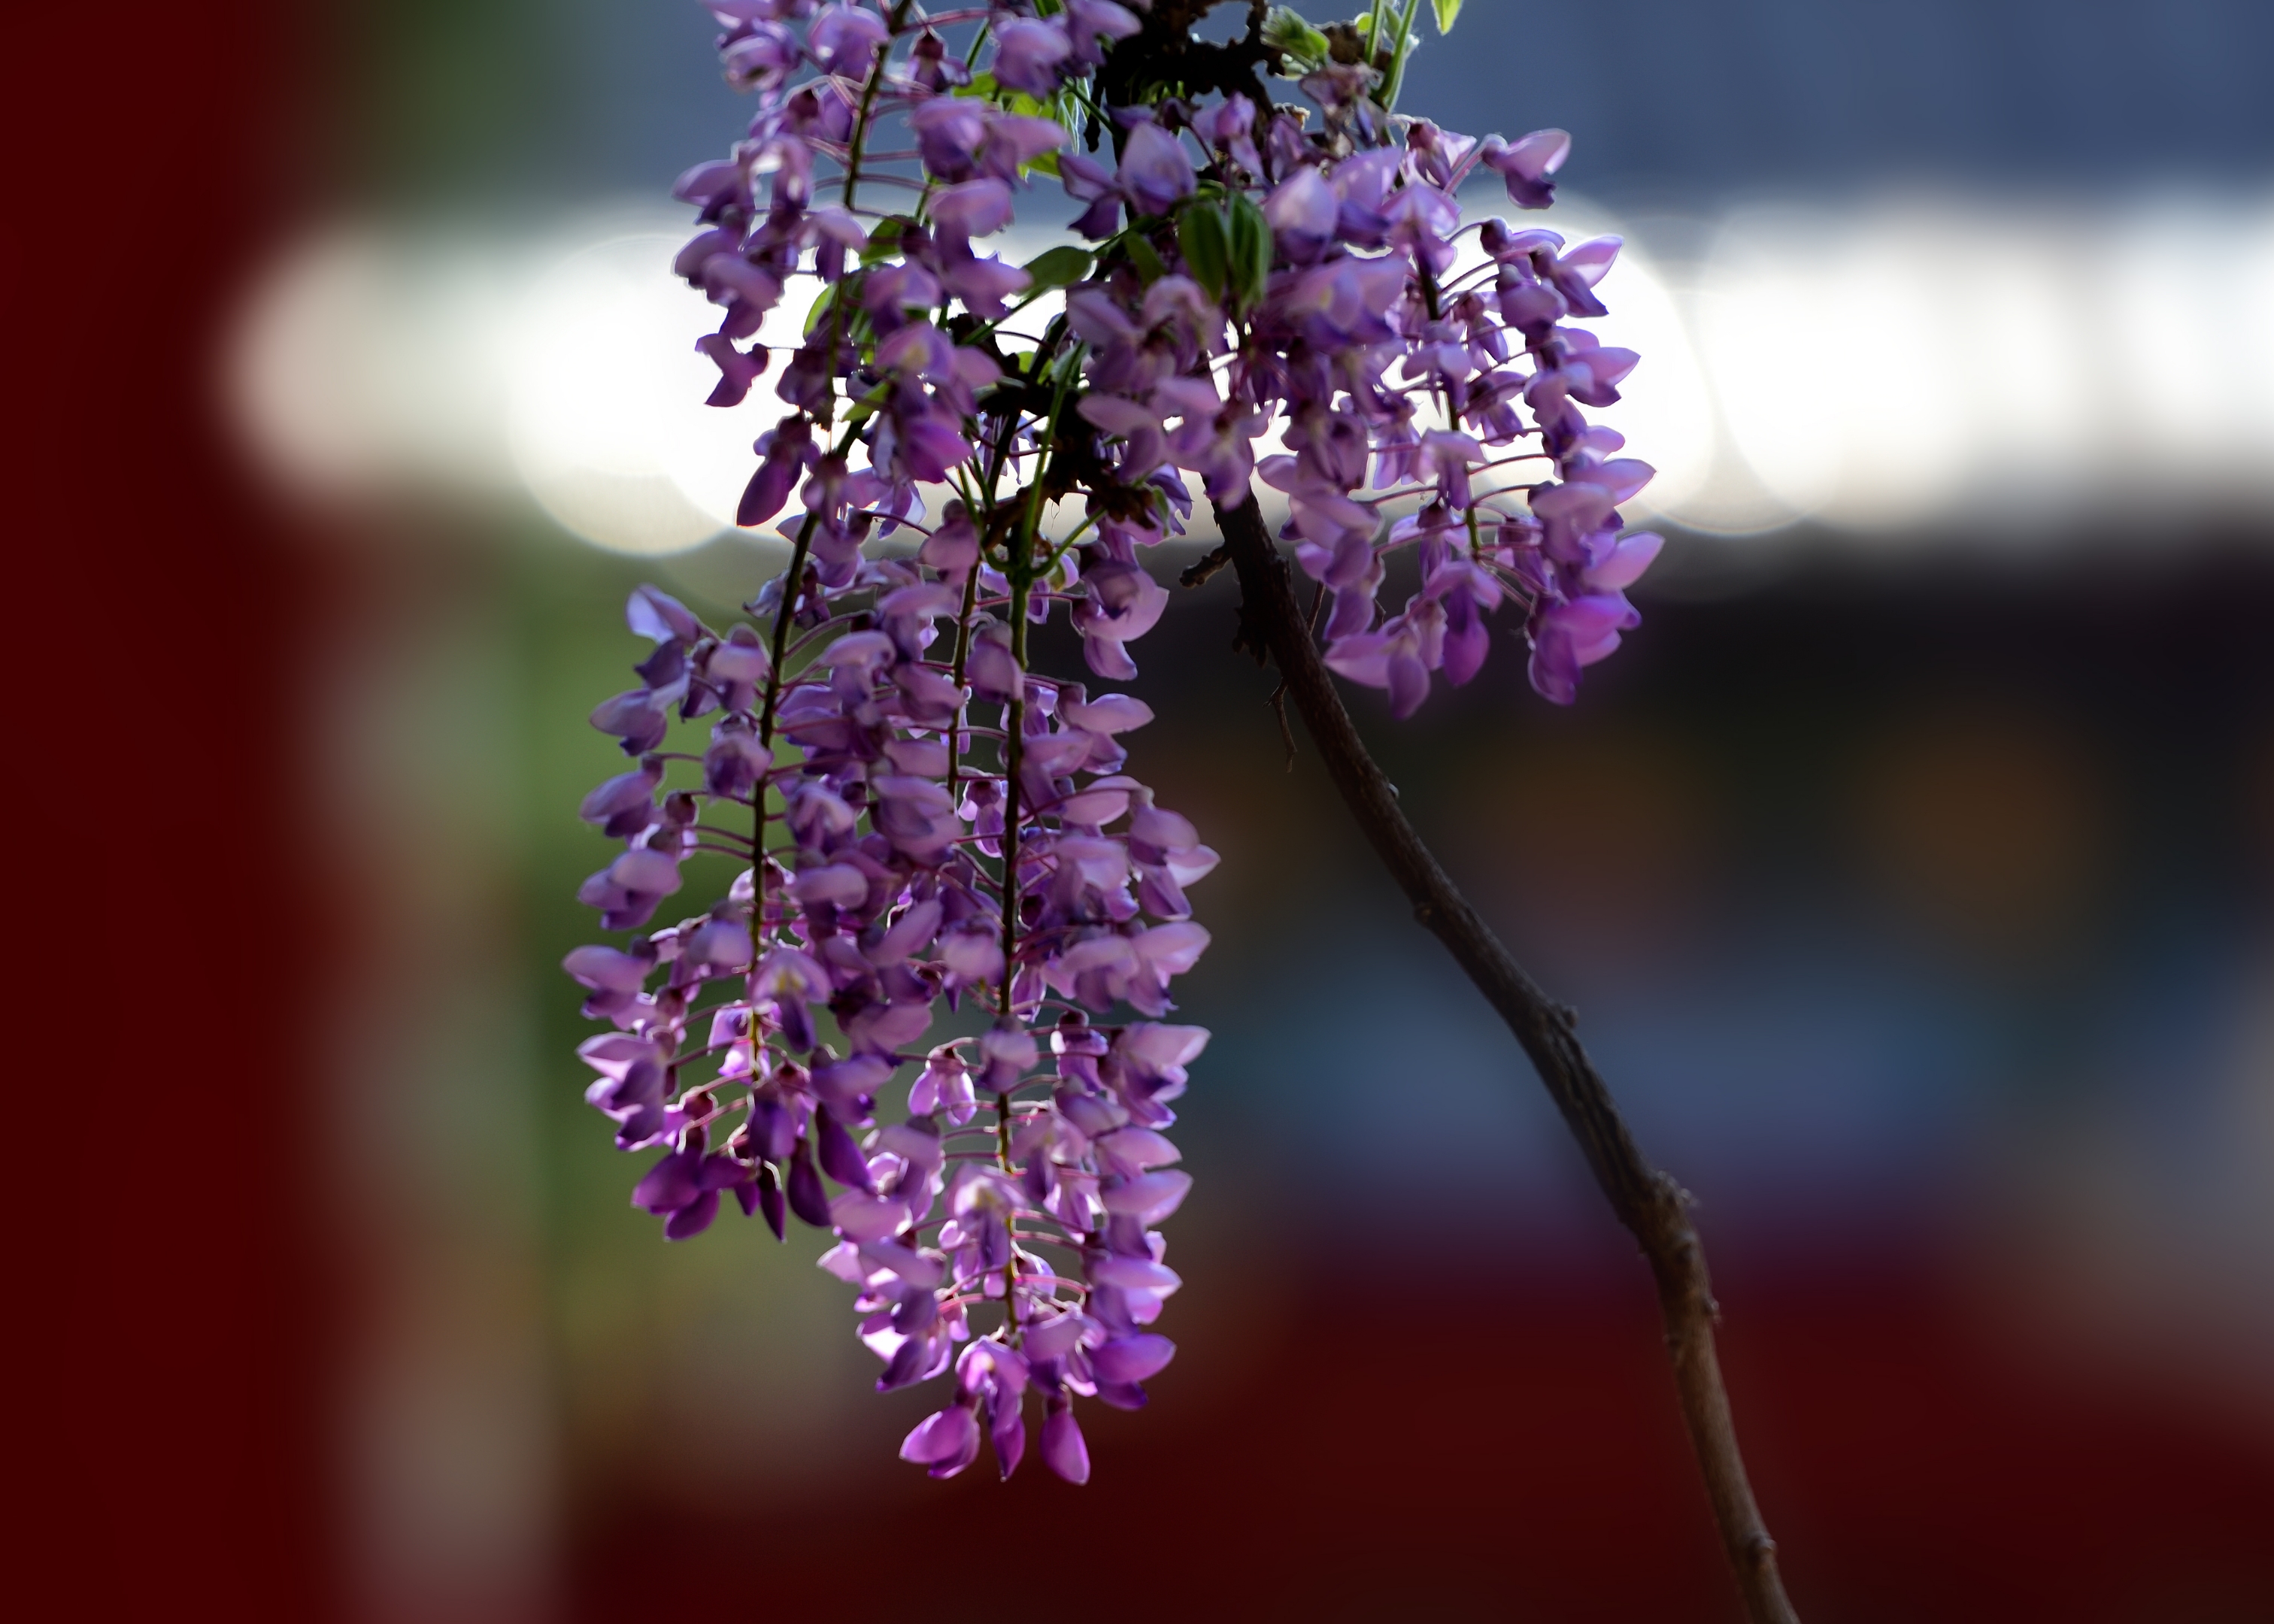 紫藤花属于落叶攀藤灌木,其根茎通常缠绕在墙壁或树干等地方生长.